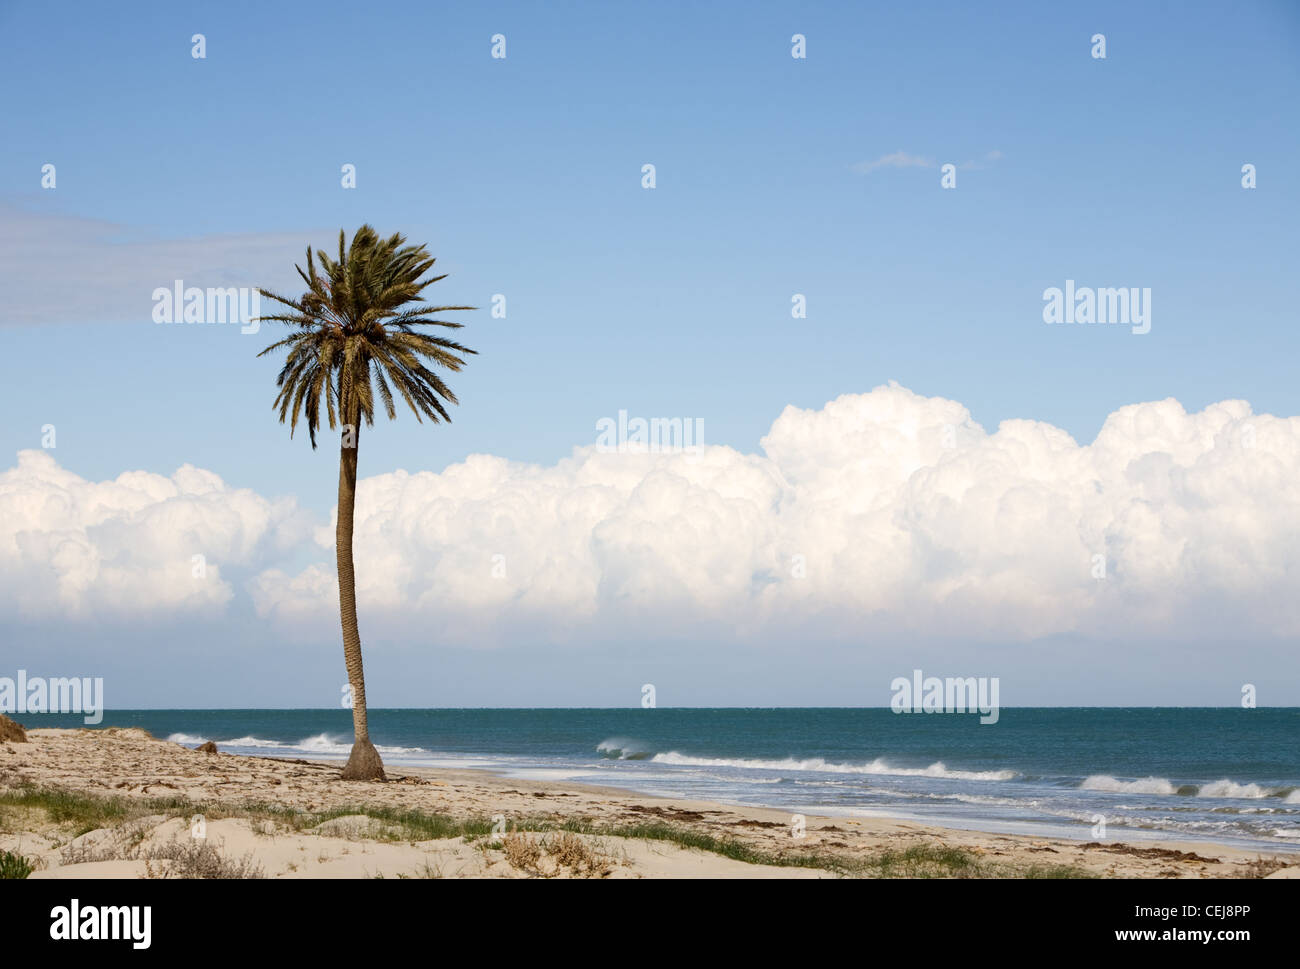 Date unique palmier sur la plage près de la mer Méditerranée, l'île de Djerba, Tunisie, Afrique Banque D'Images